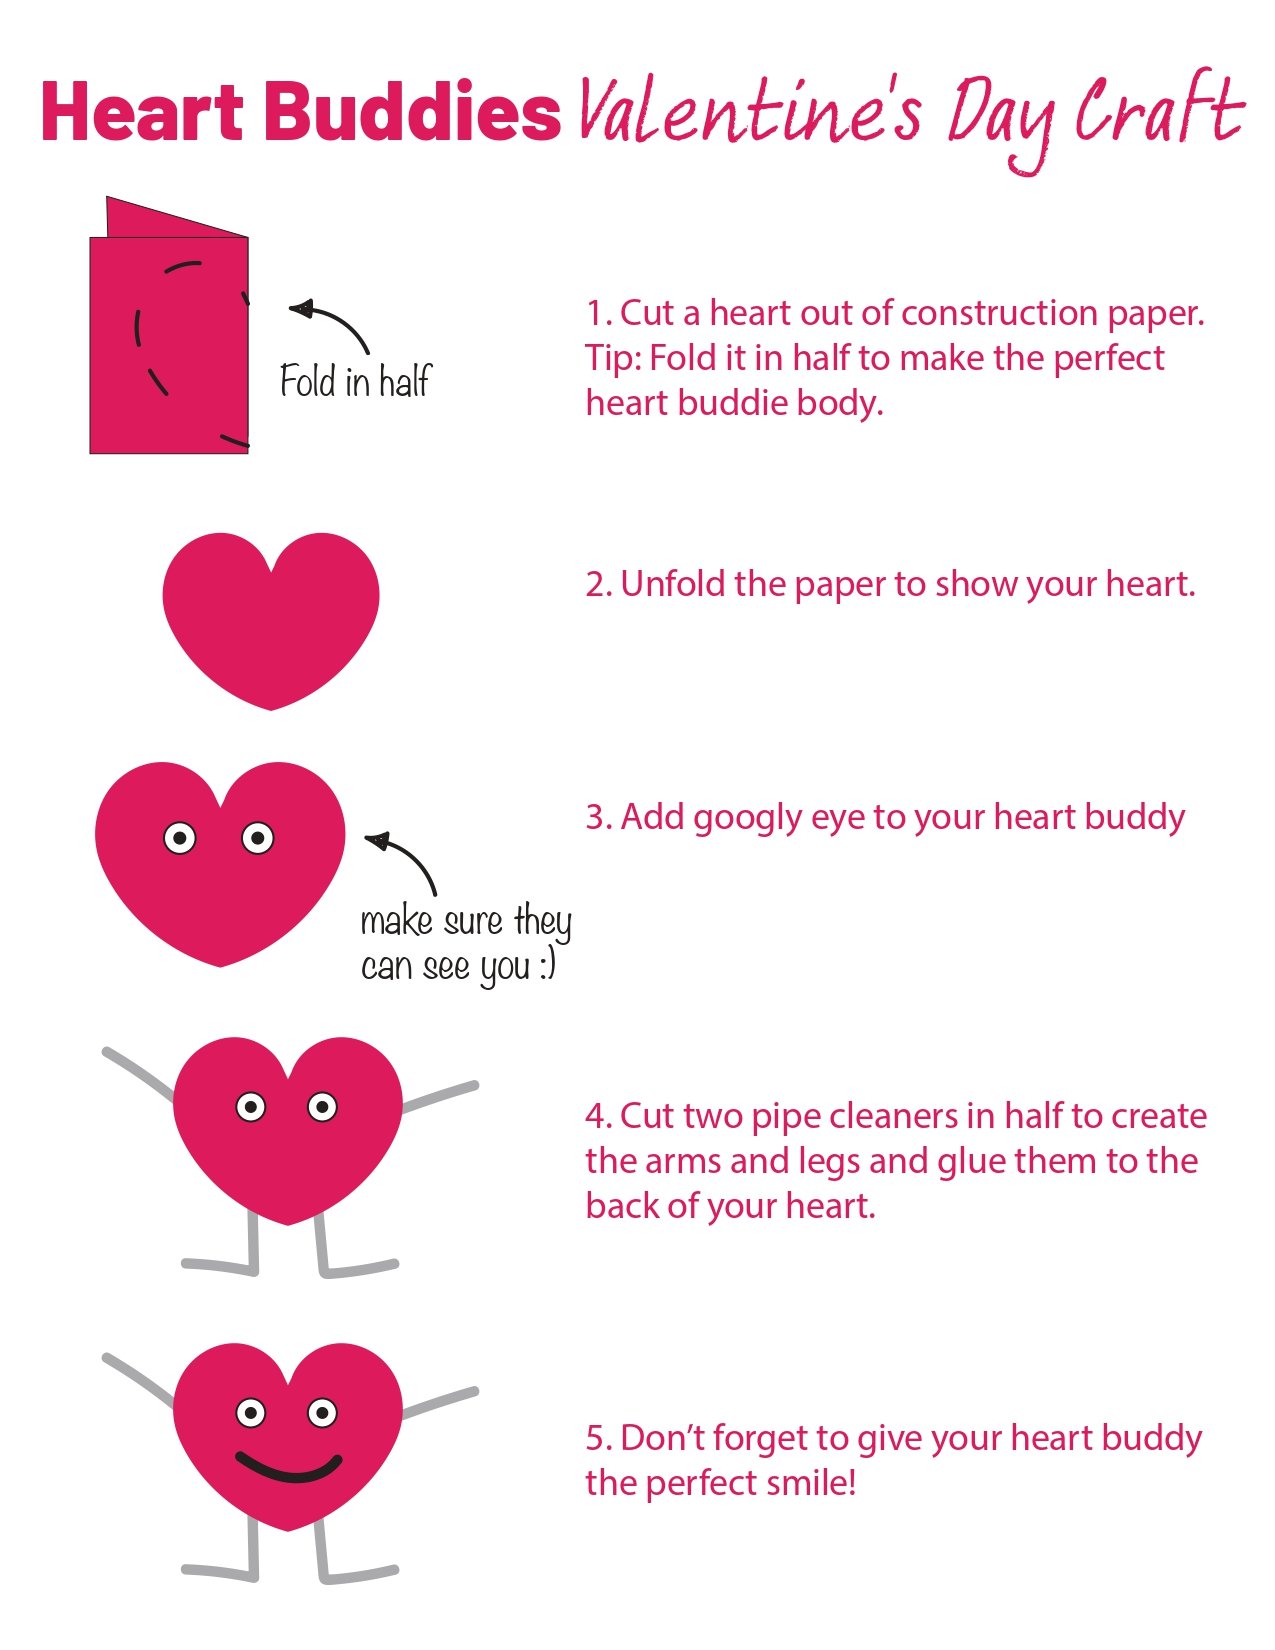 Heart Buddies Valentine’s Day Craft_page-0001